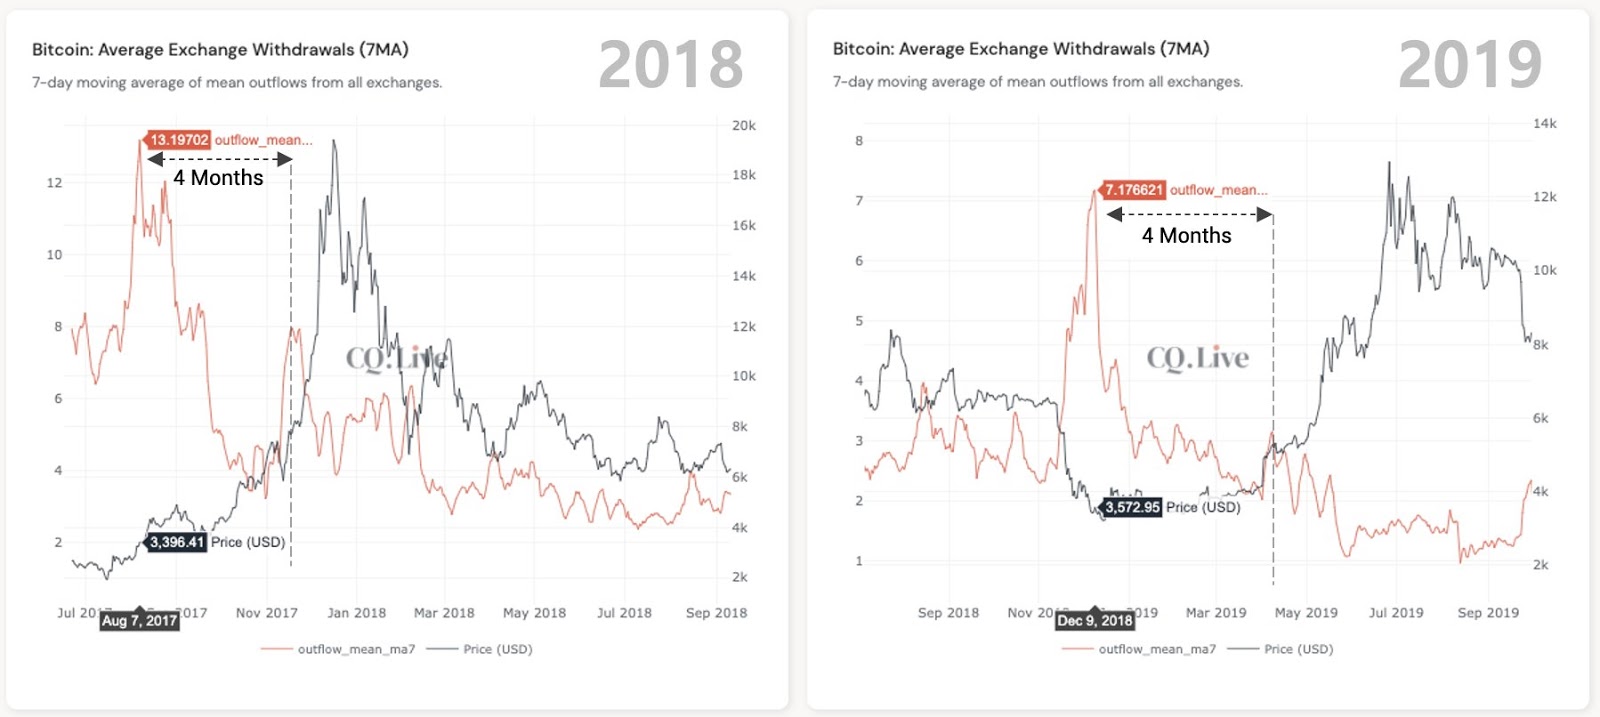 Comparación del promedio de retiros de Bitcoin los exchanges. Fuente: Ki Young Ju/ Twitter